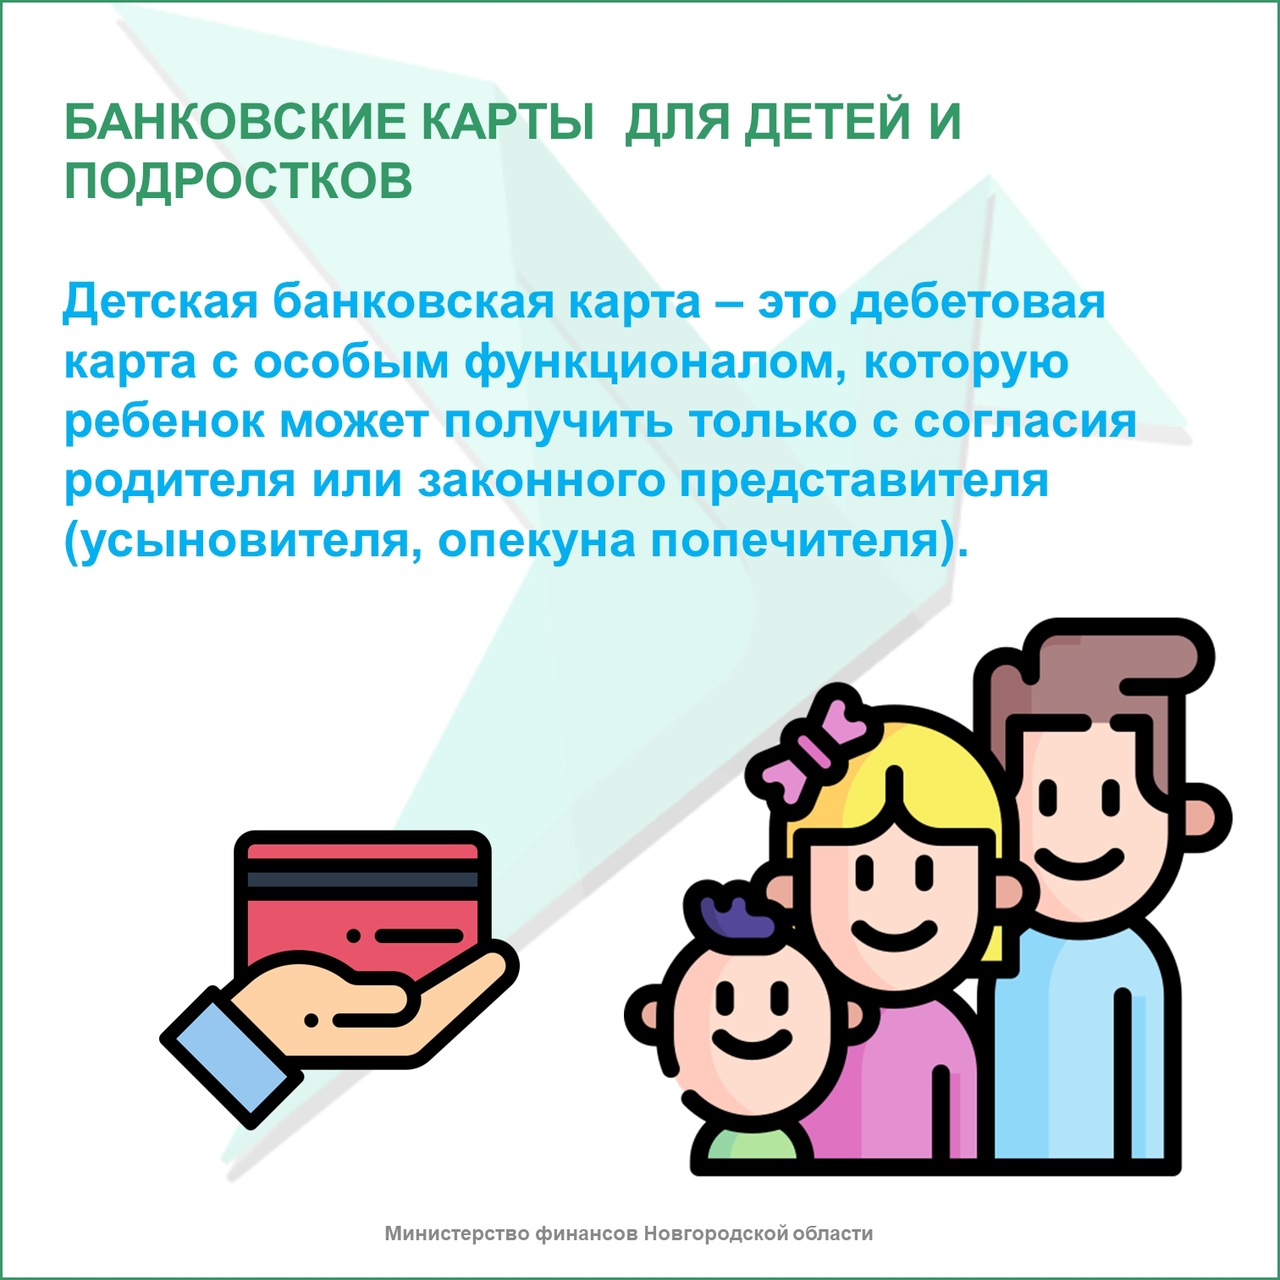 Банковская карта для детей и подростков.